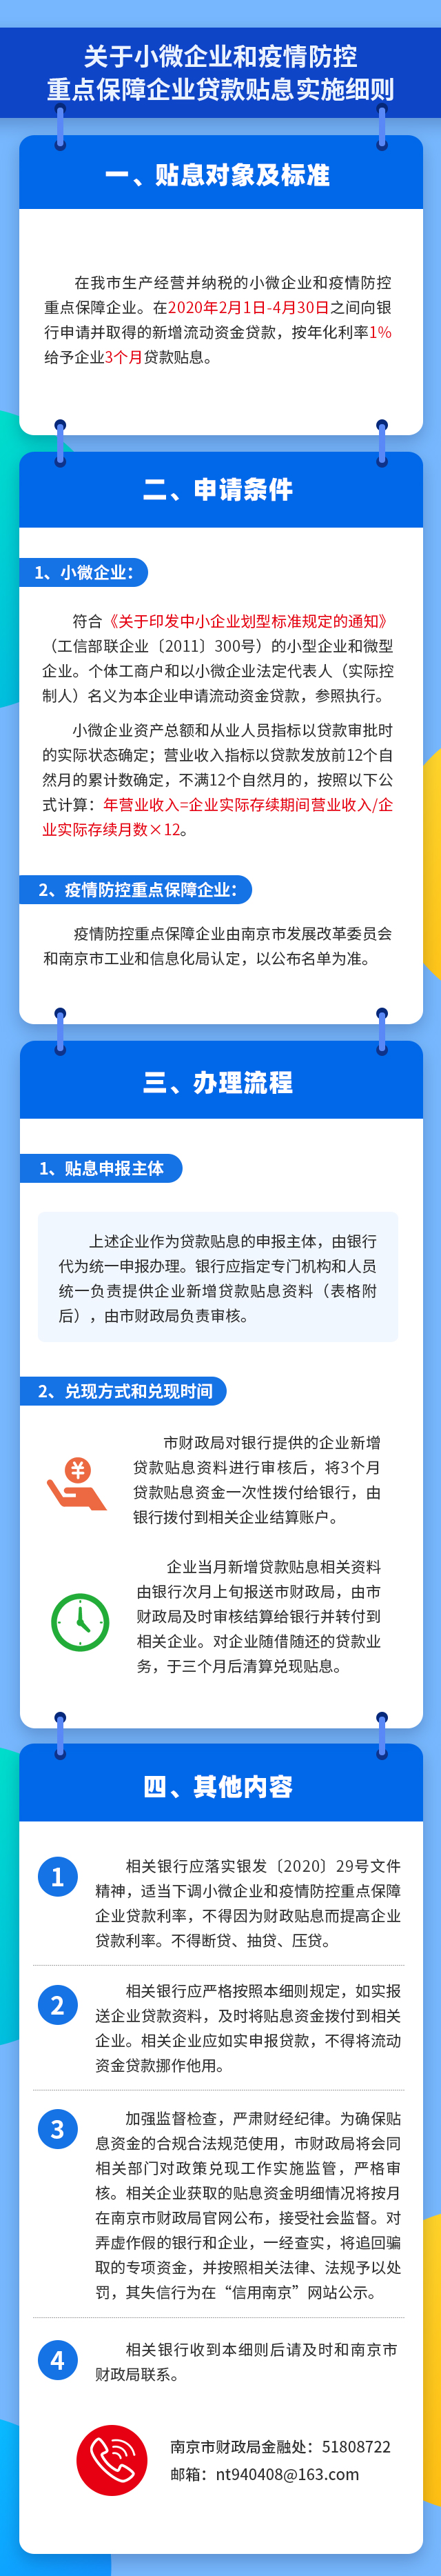 西安创业政策_杭州 创业 政策_上海 创业 政策